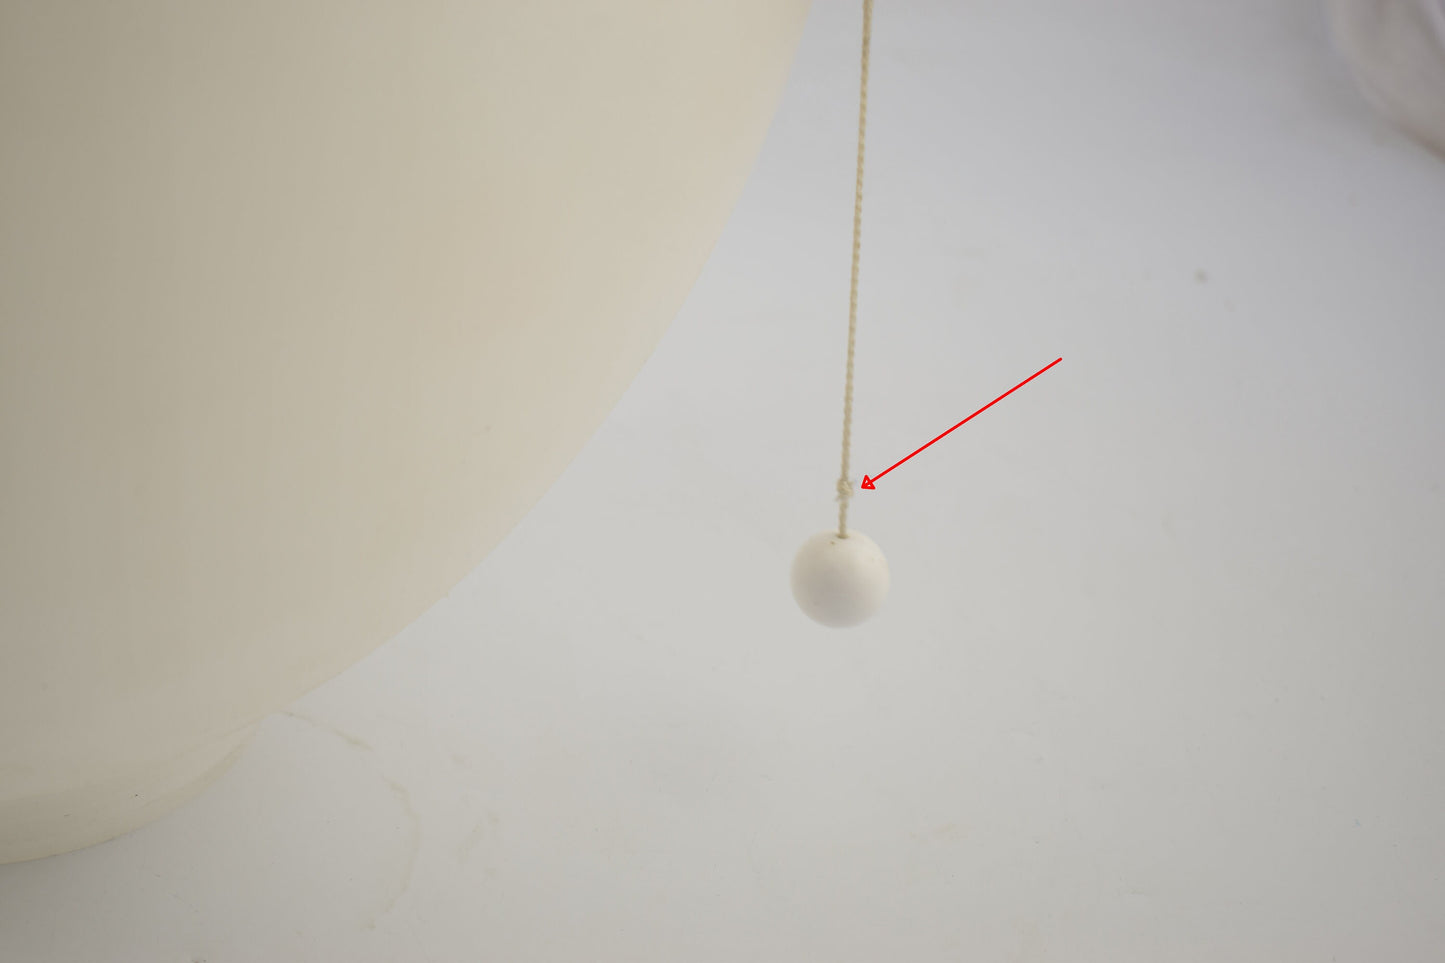 White yves christin medium designer balloon lamp from Bilumen